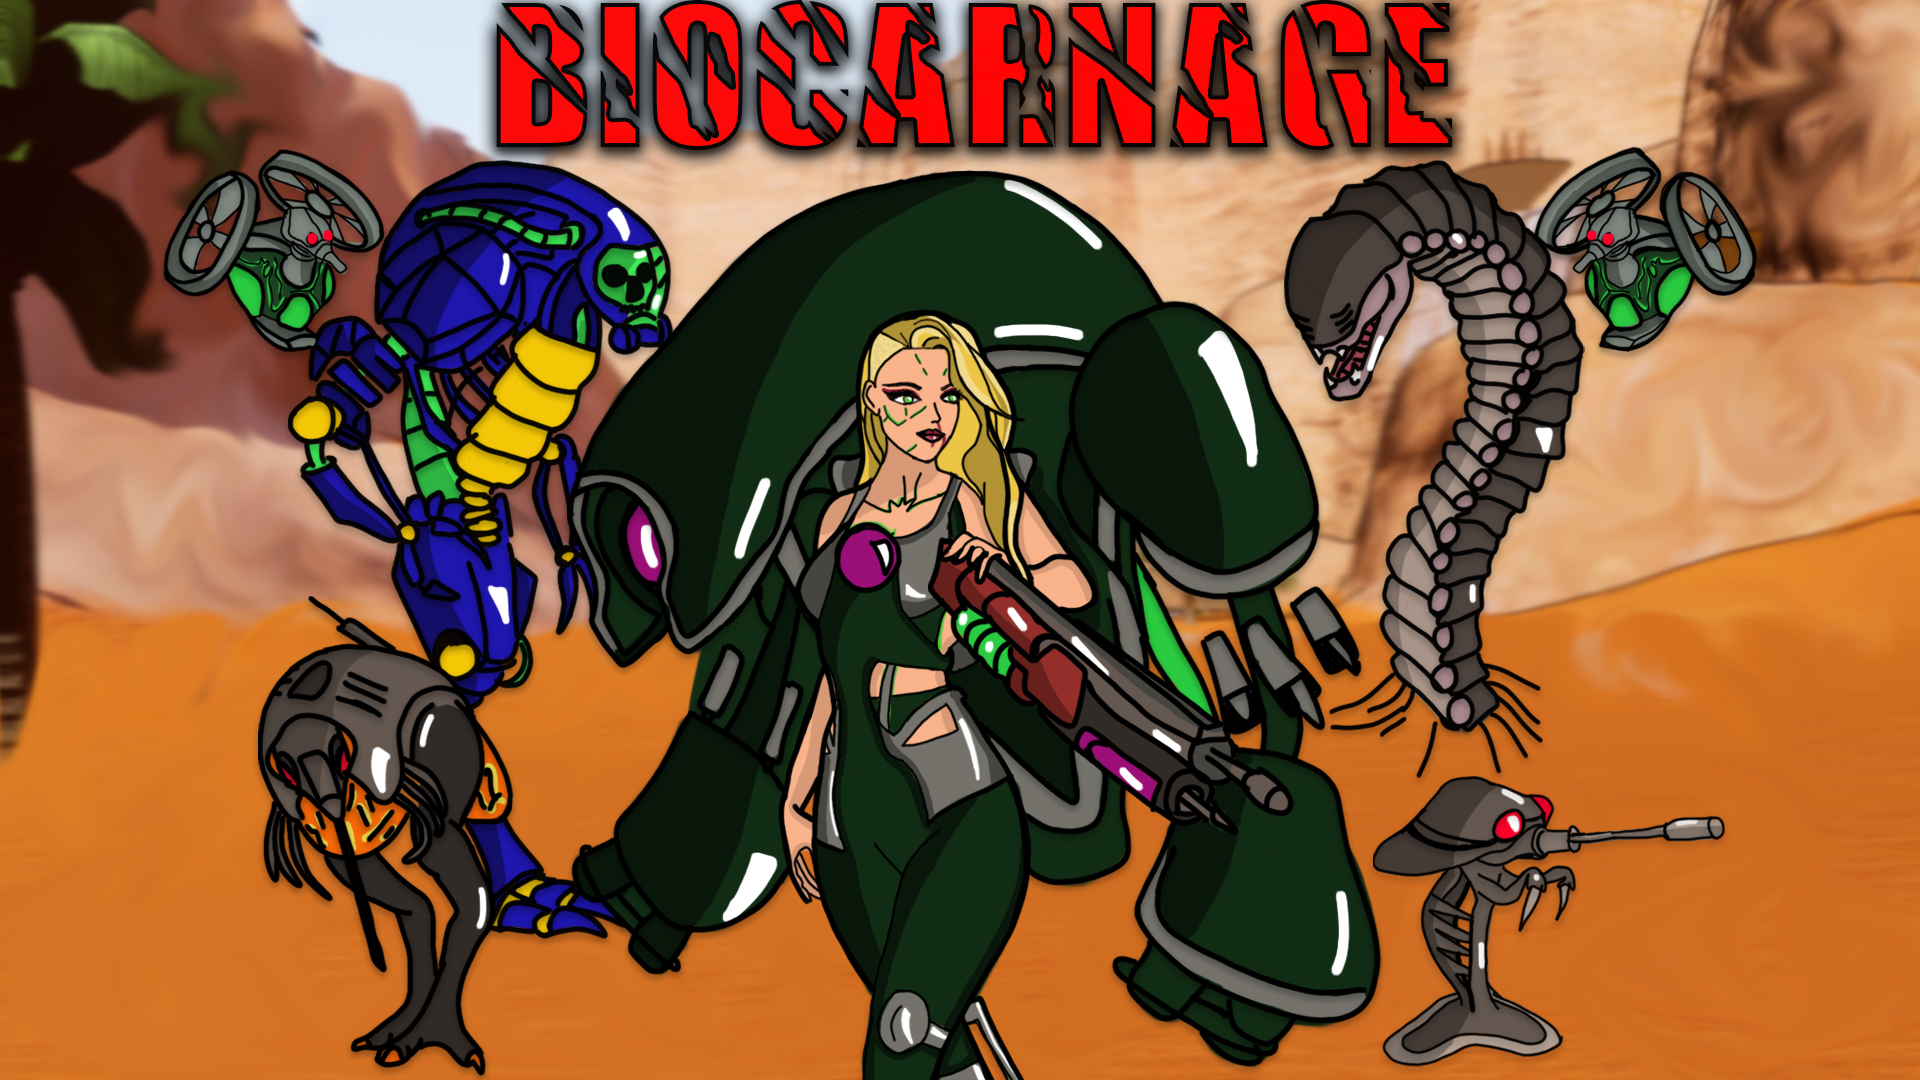 BioCarnage